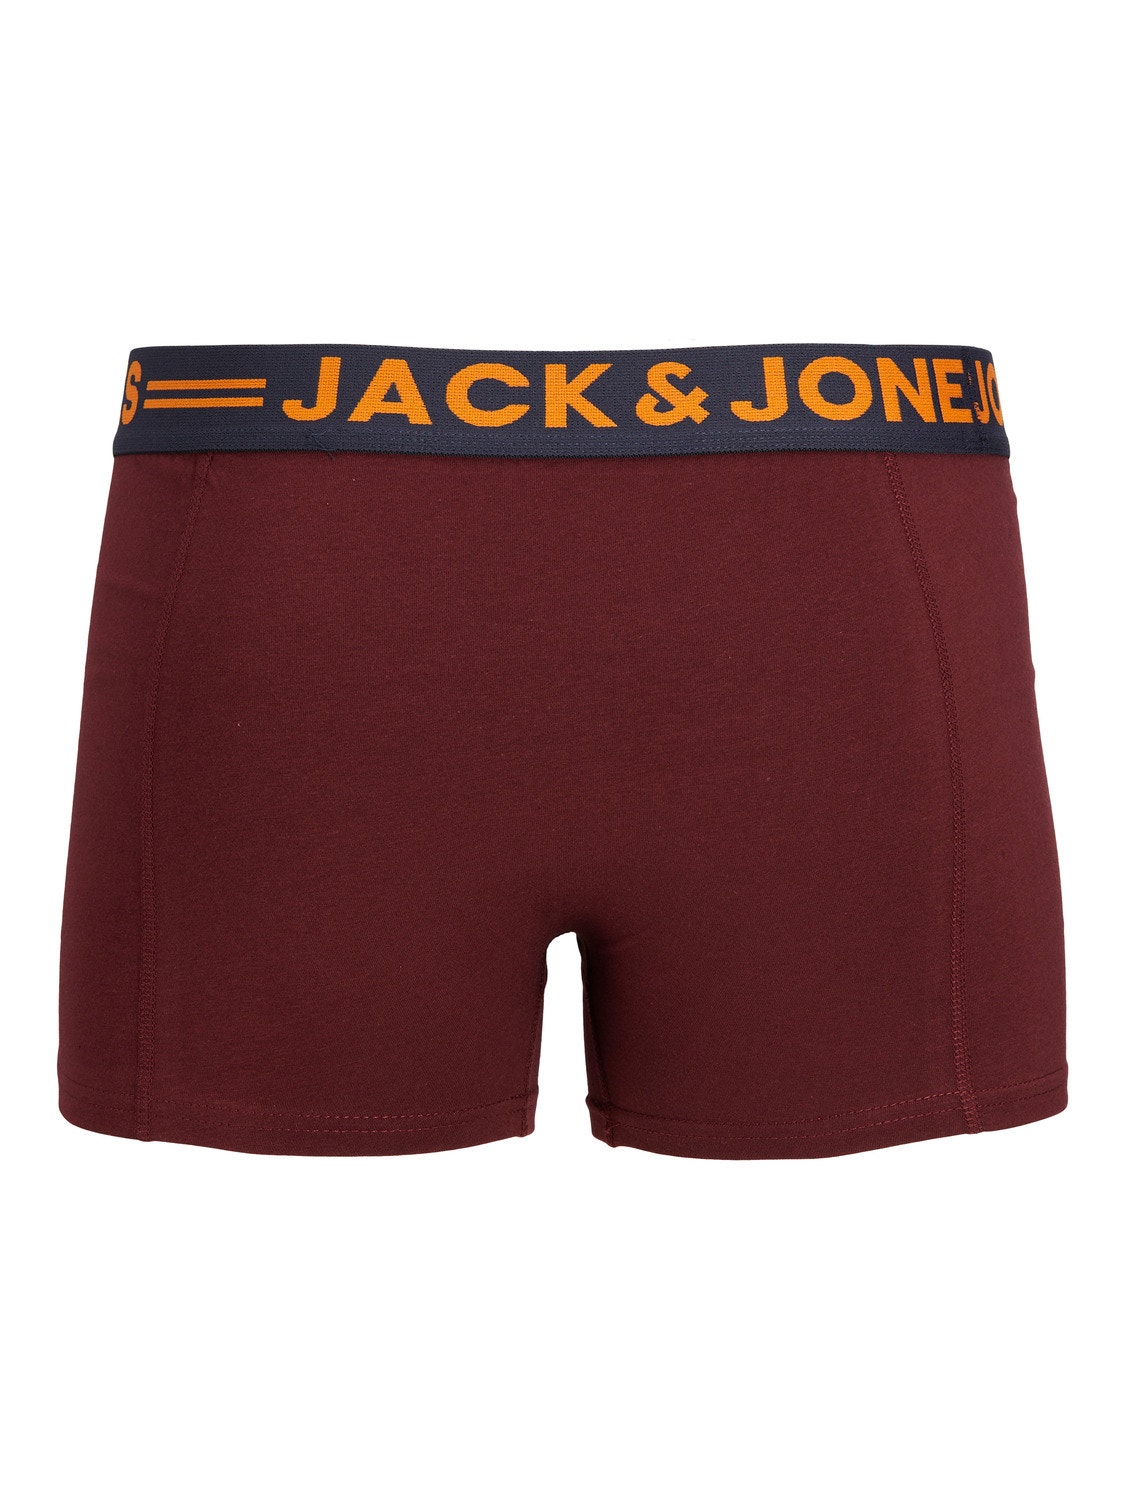 Jack & Jones 3-pack Trunks -Burgundy - 12113943